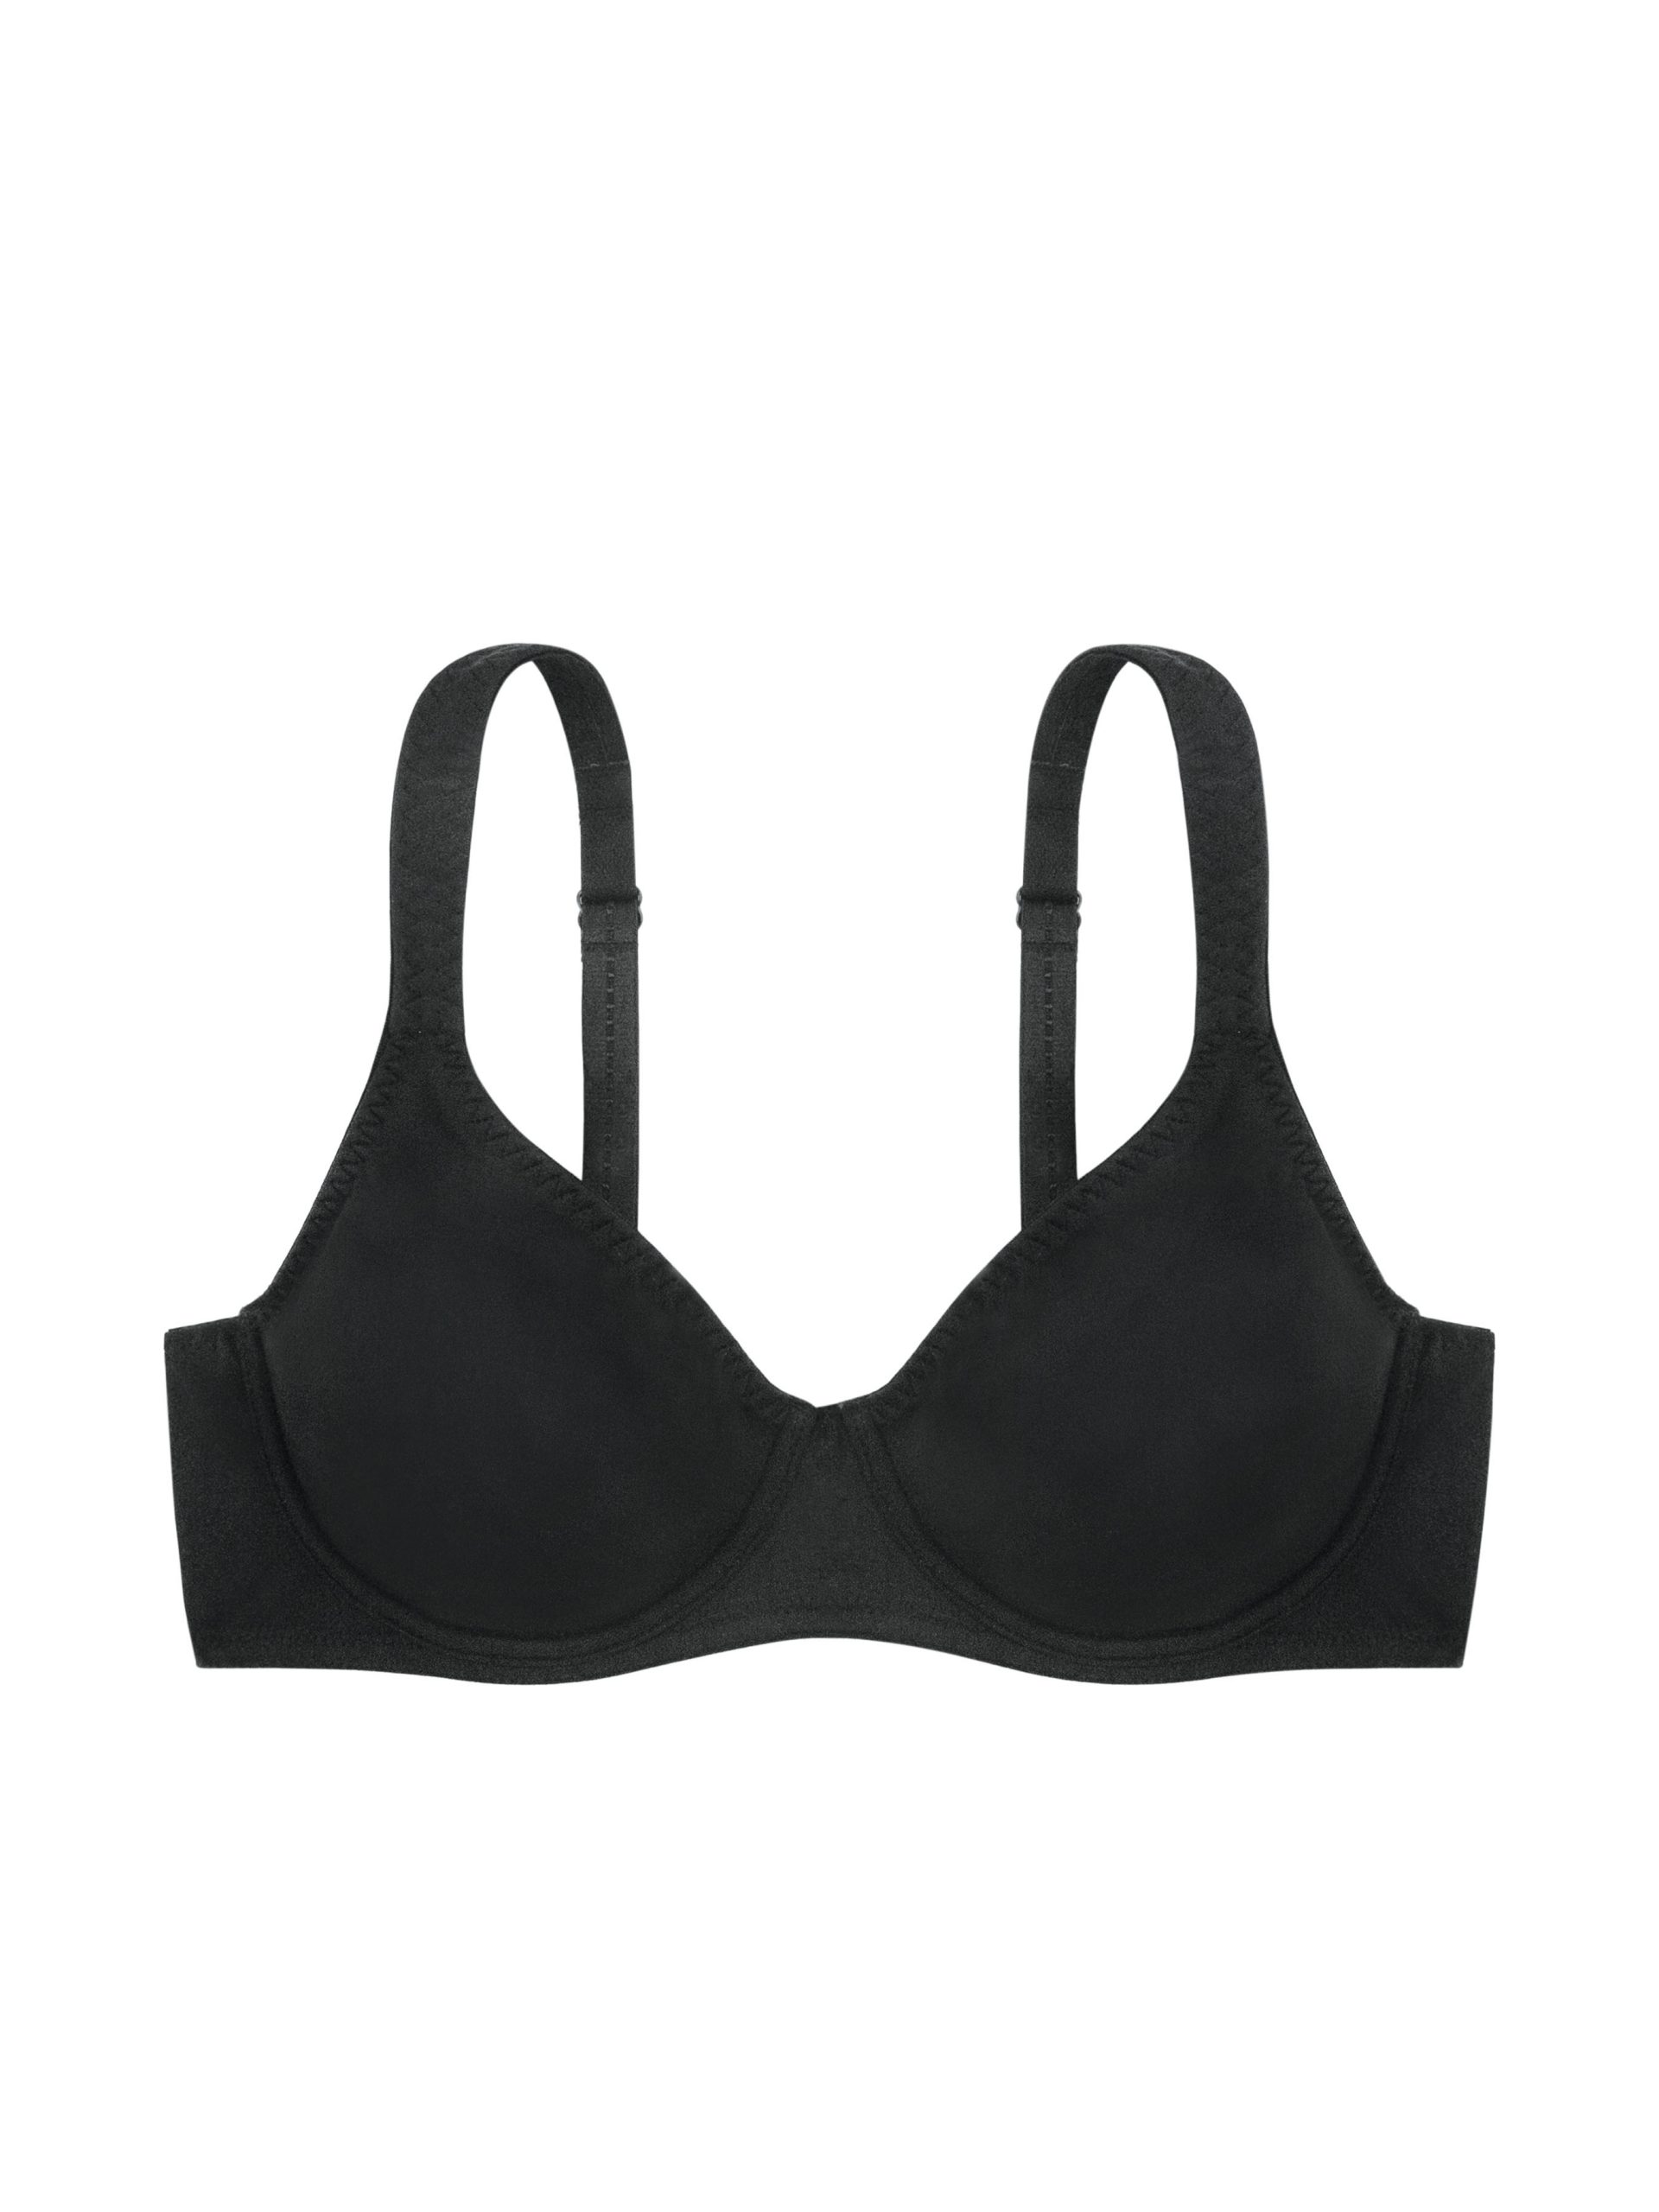 Black non-wired bra - Dim Trendy Micro